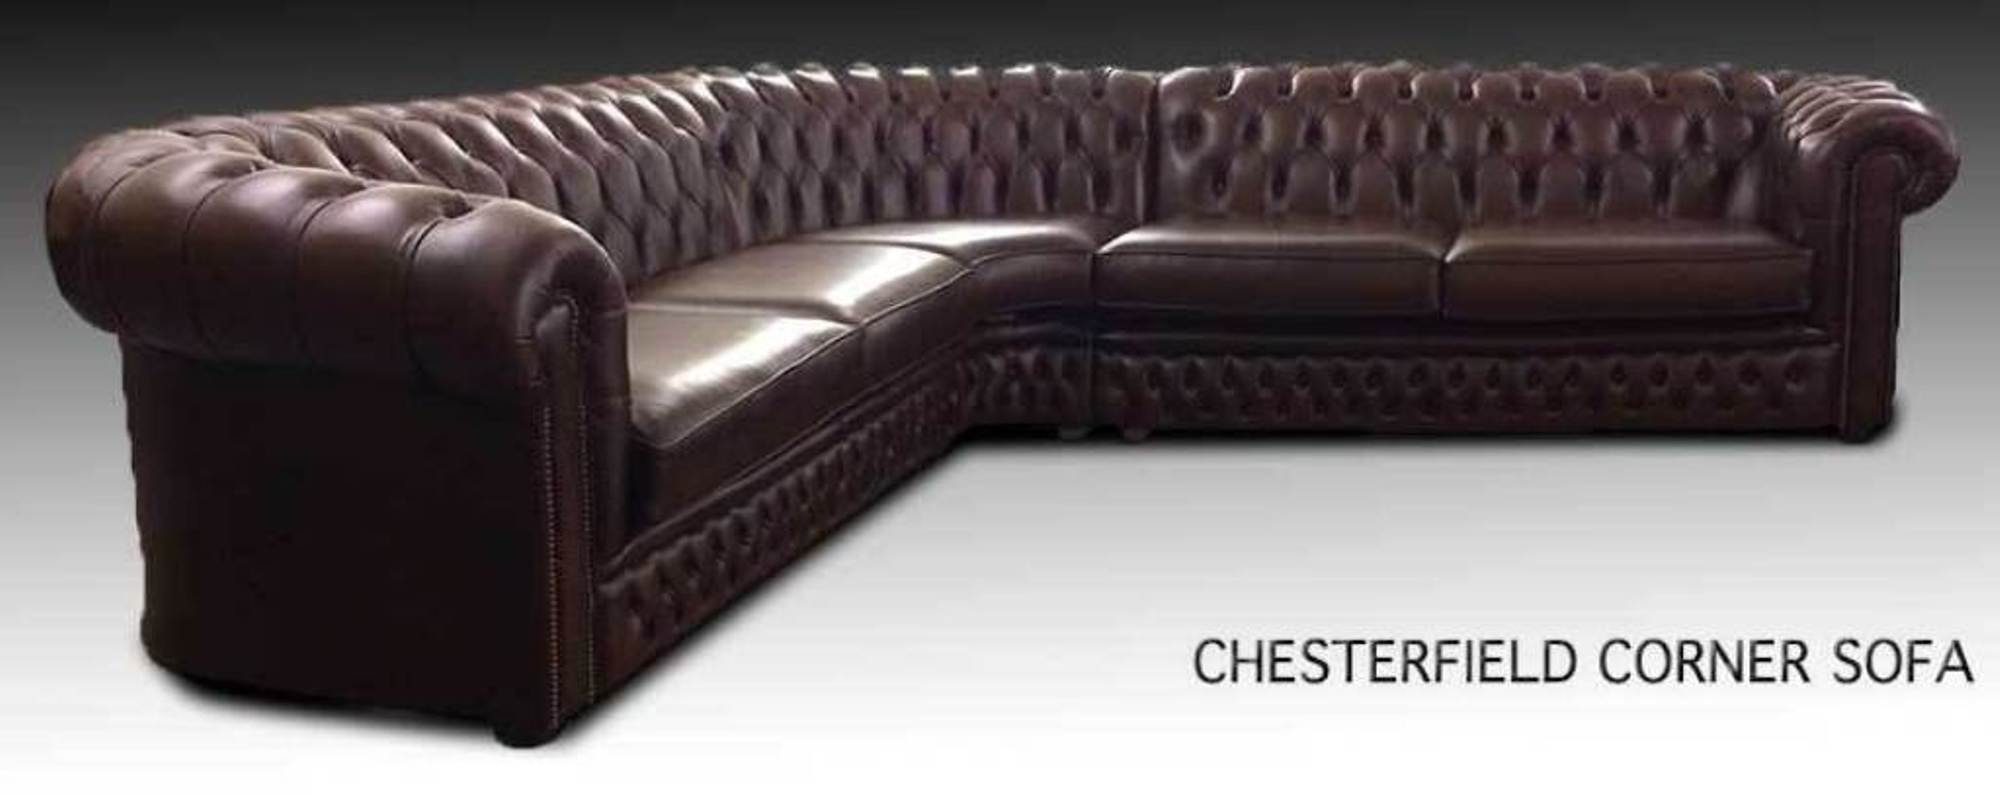 JVmoebel Ecksofa Chesterfield Leder Sofort, 100% Sofa Ecksofa 3 Europa in Polster Design Made Teile, Couch Eck